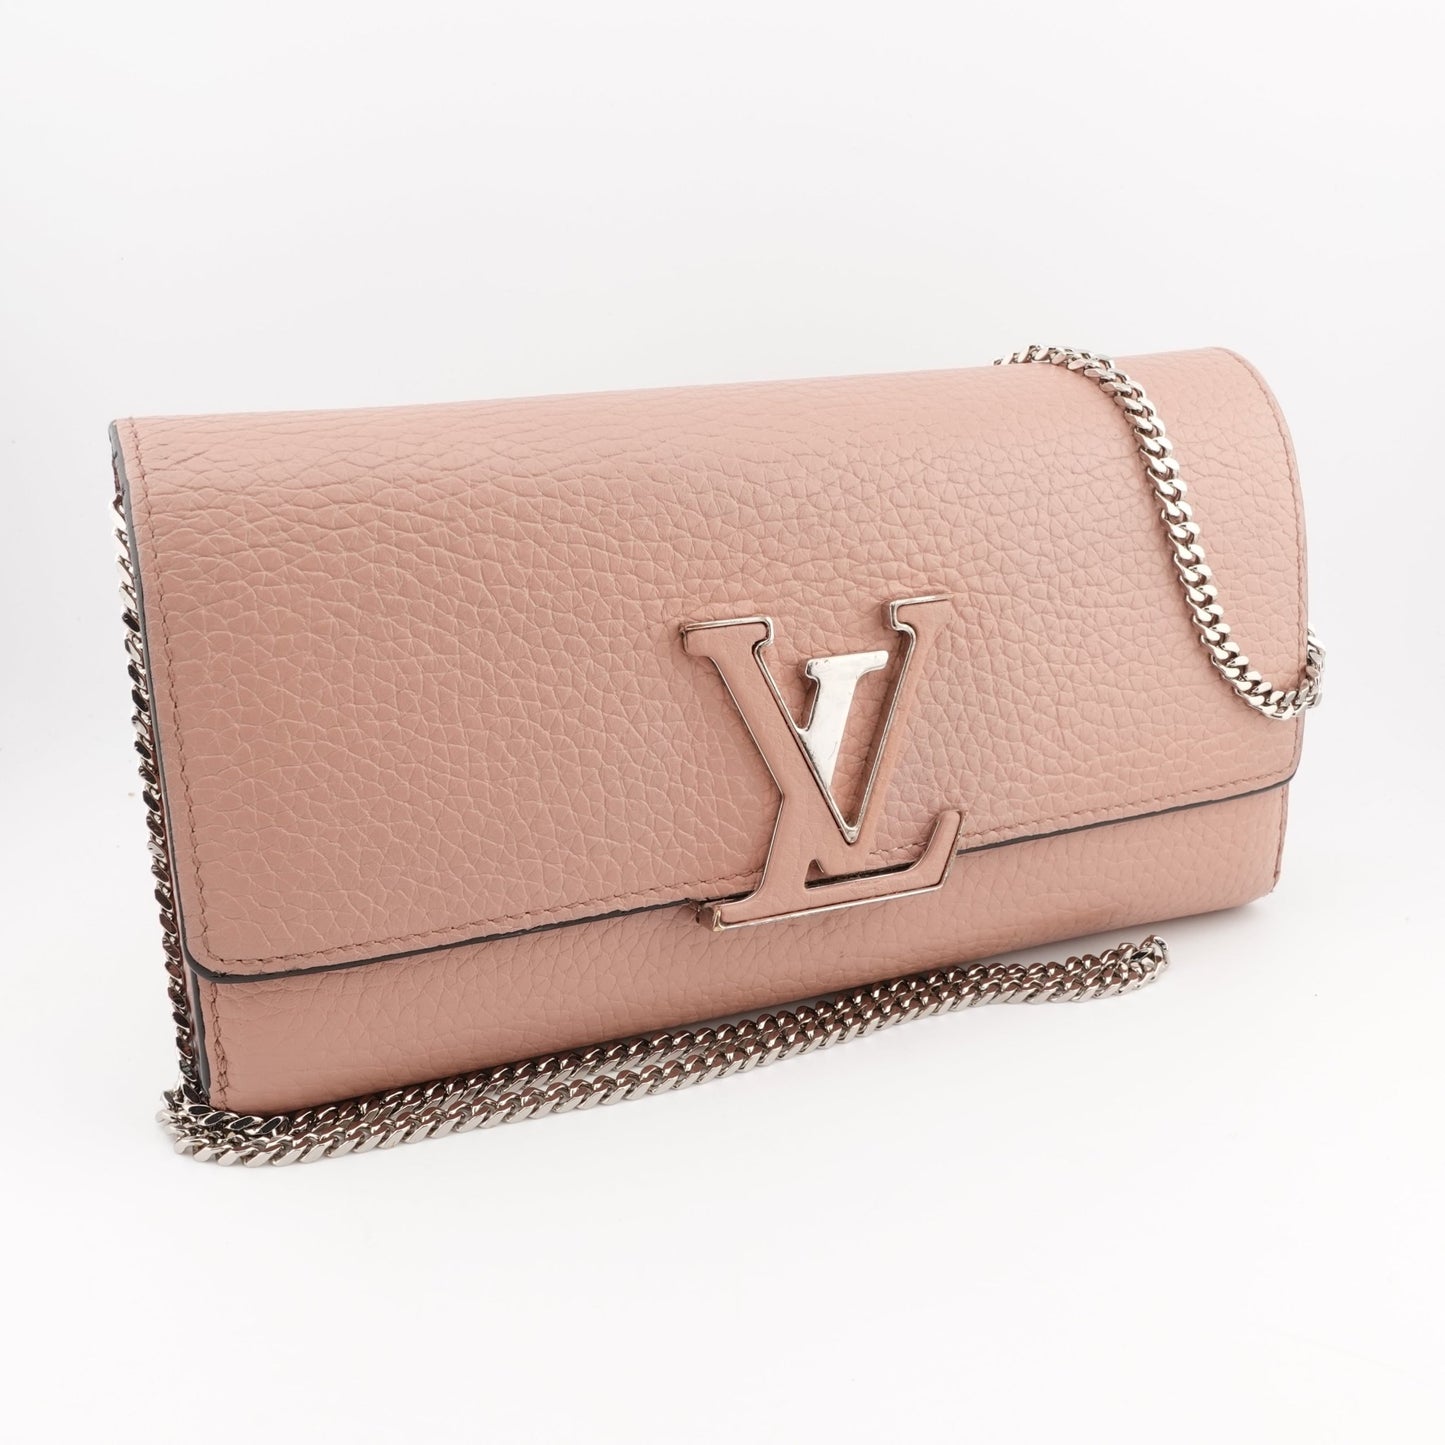 LOUIS VUITTON Capucines Leather Wallet on Chain - Bag Envy